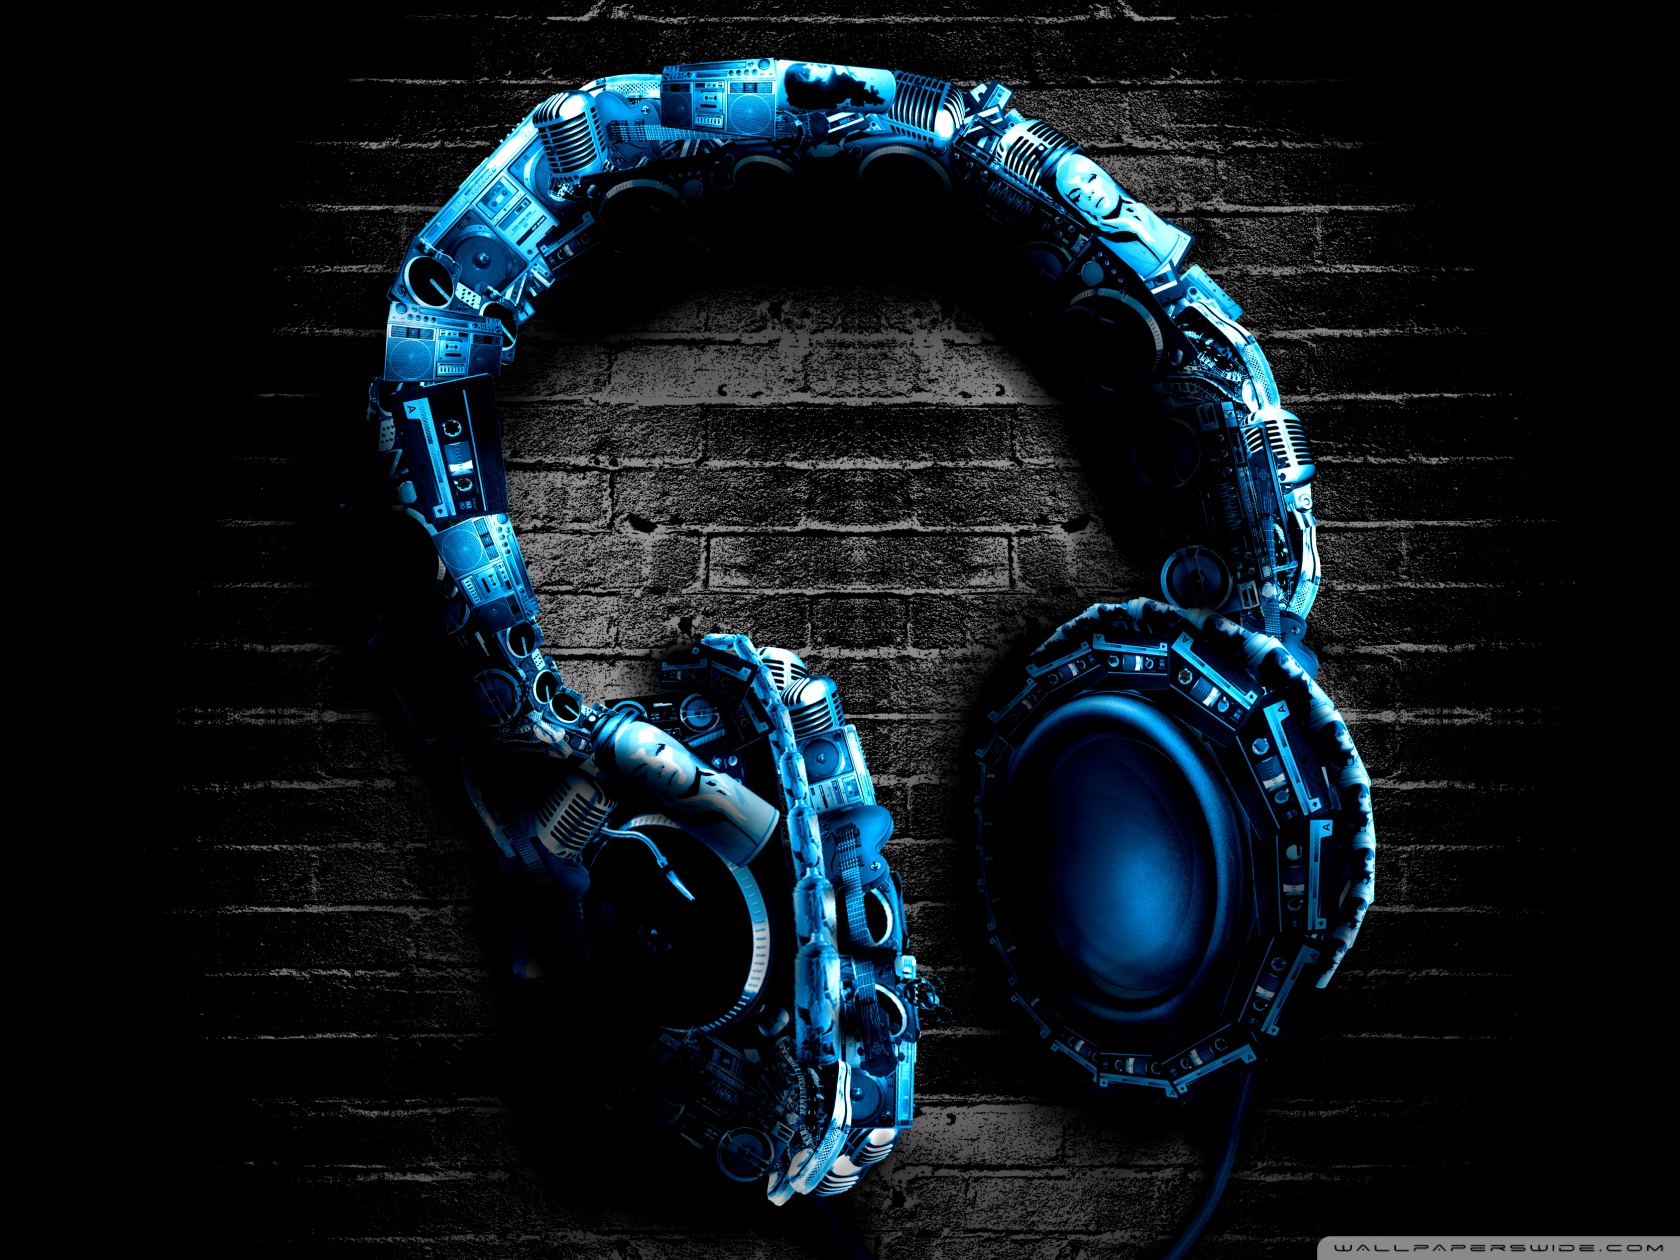 headphones wallpaper hd